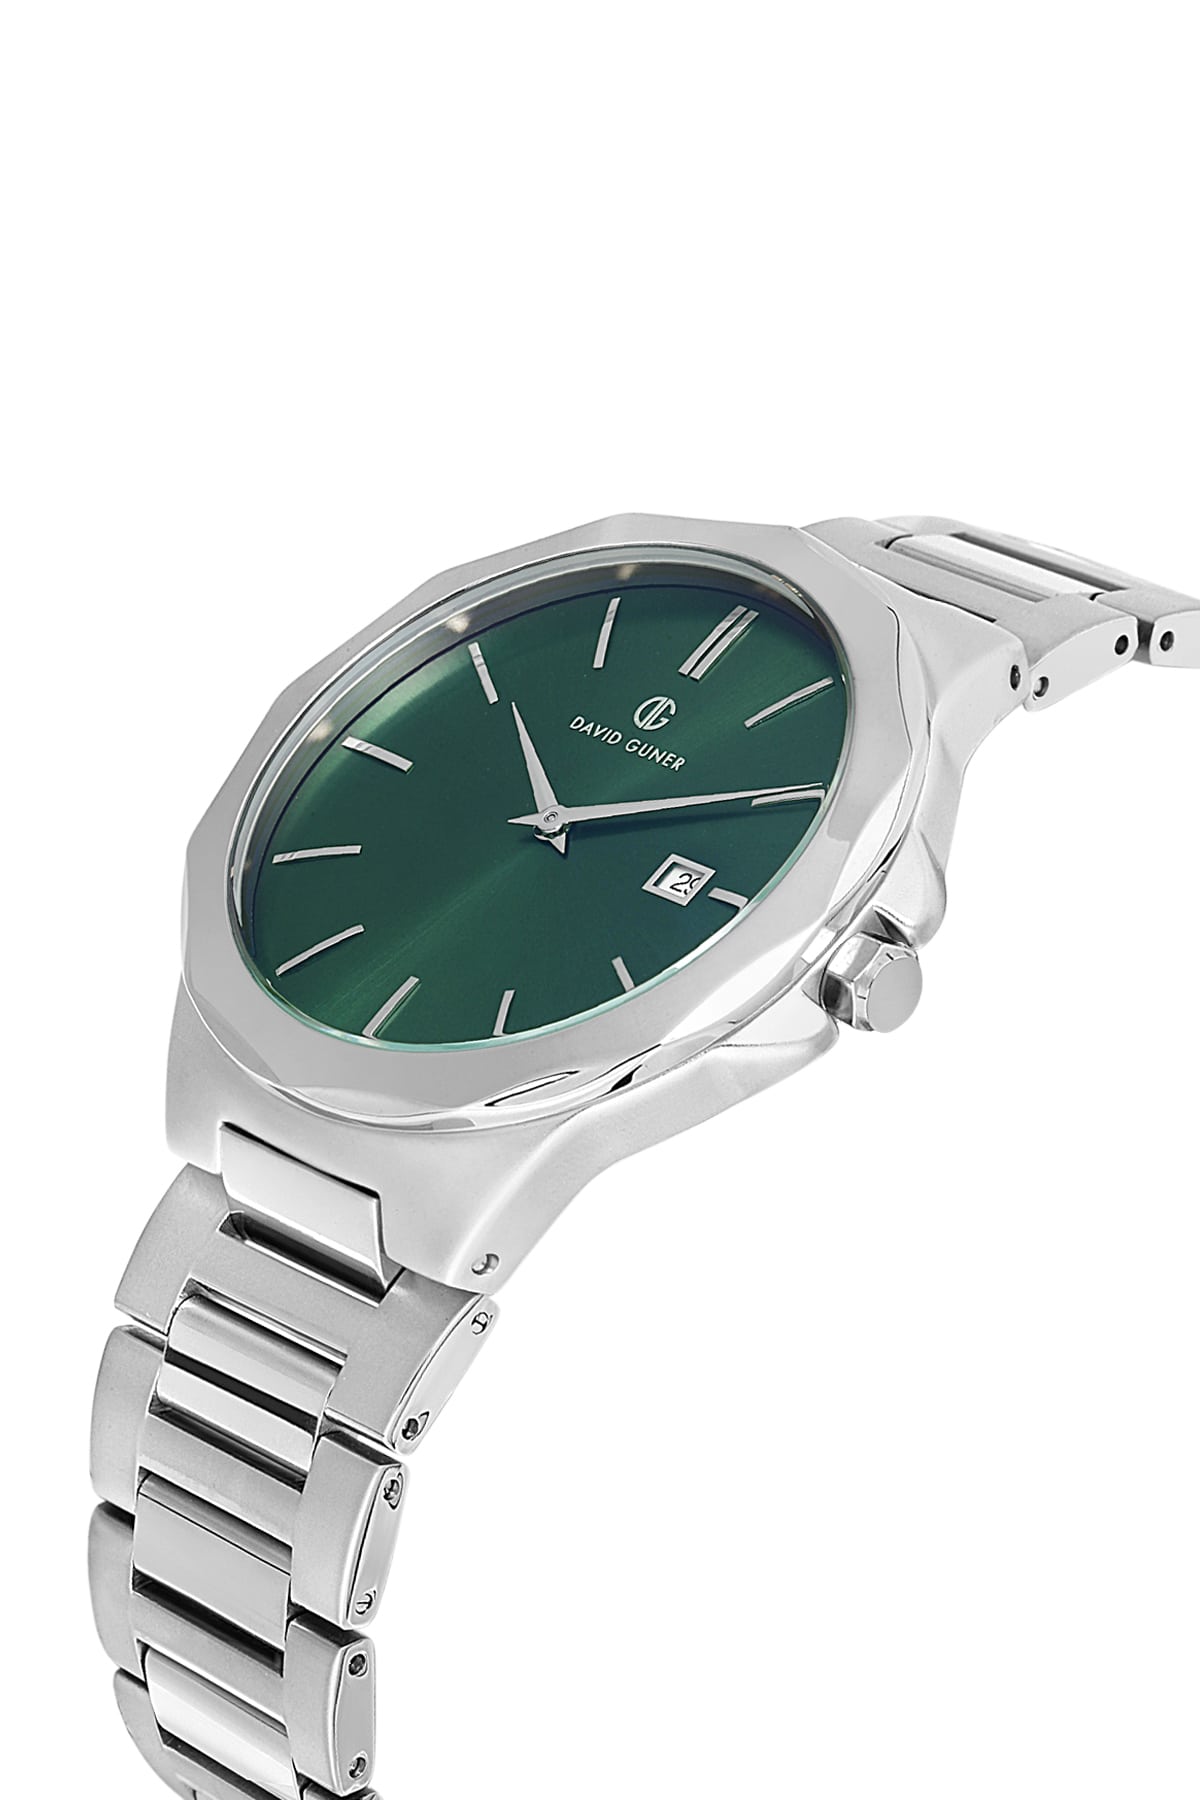 DAVID GUNER Green Dial Silver Plated Calendar Men's Wristwatch